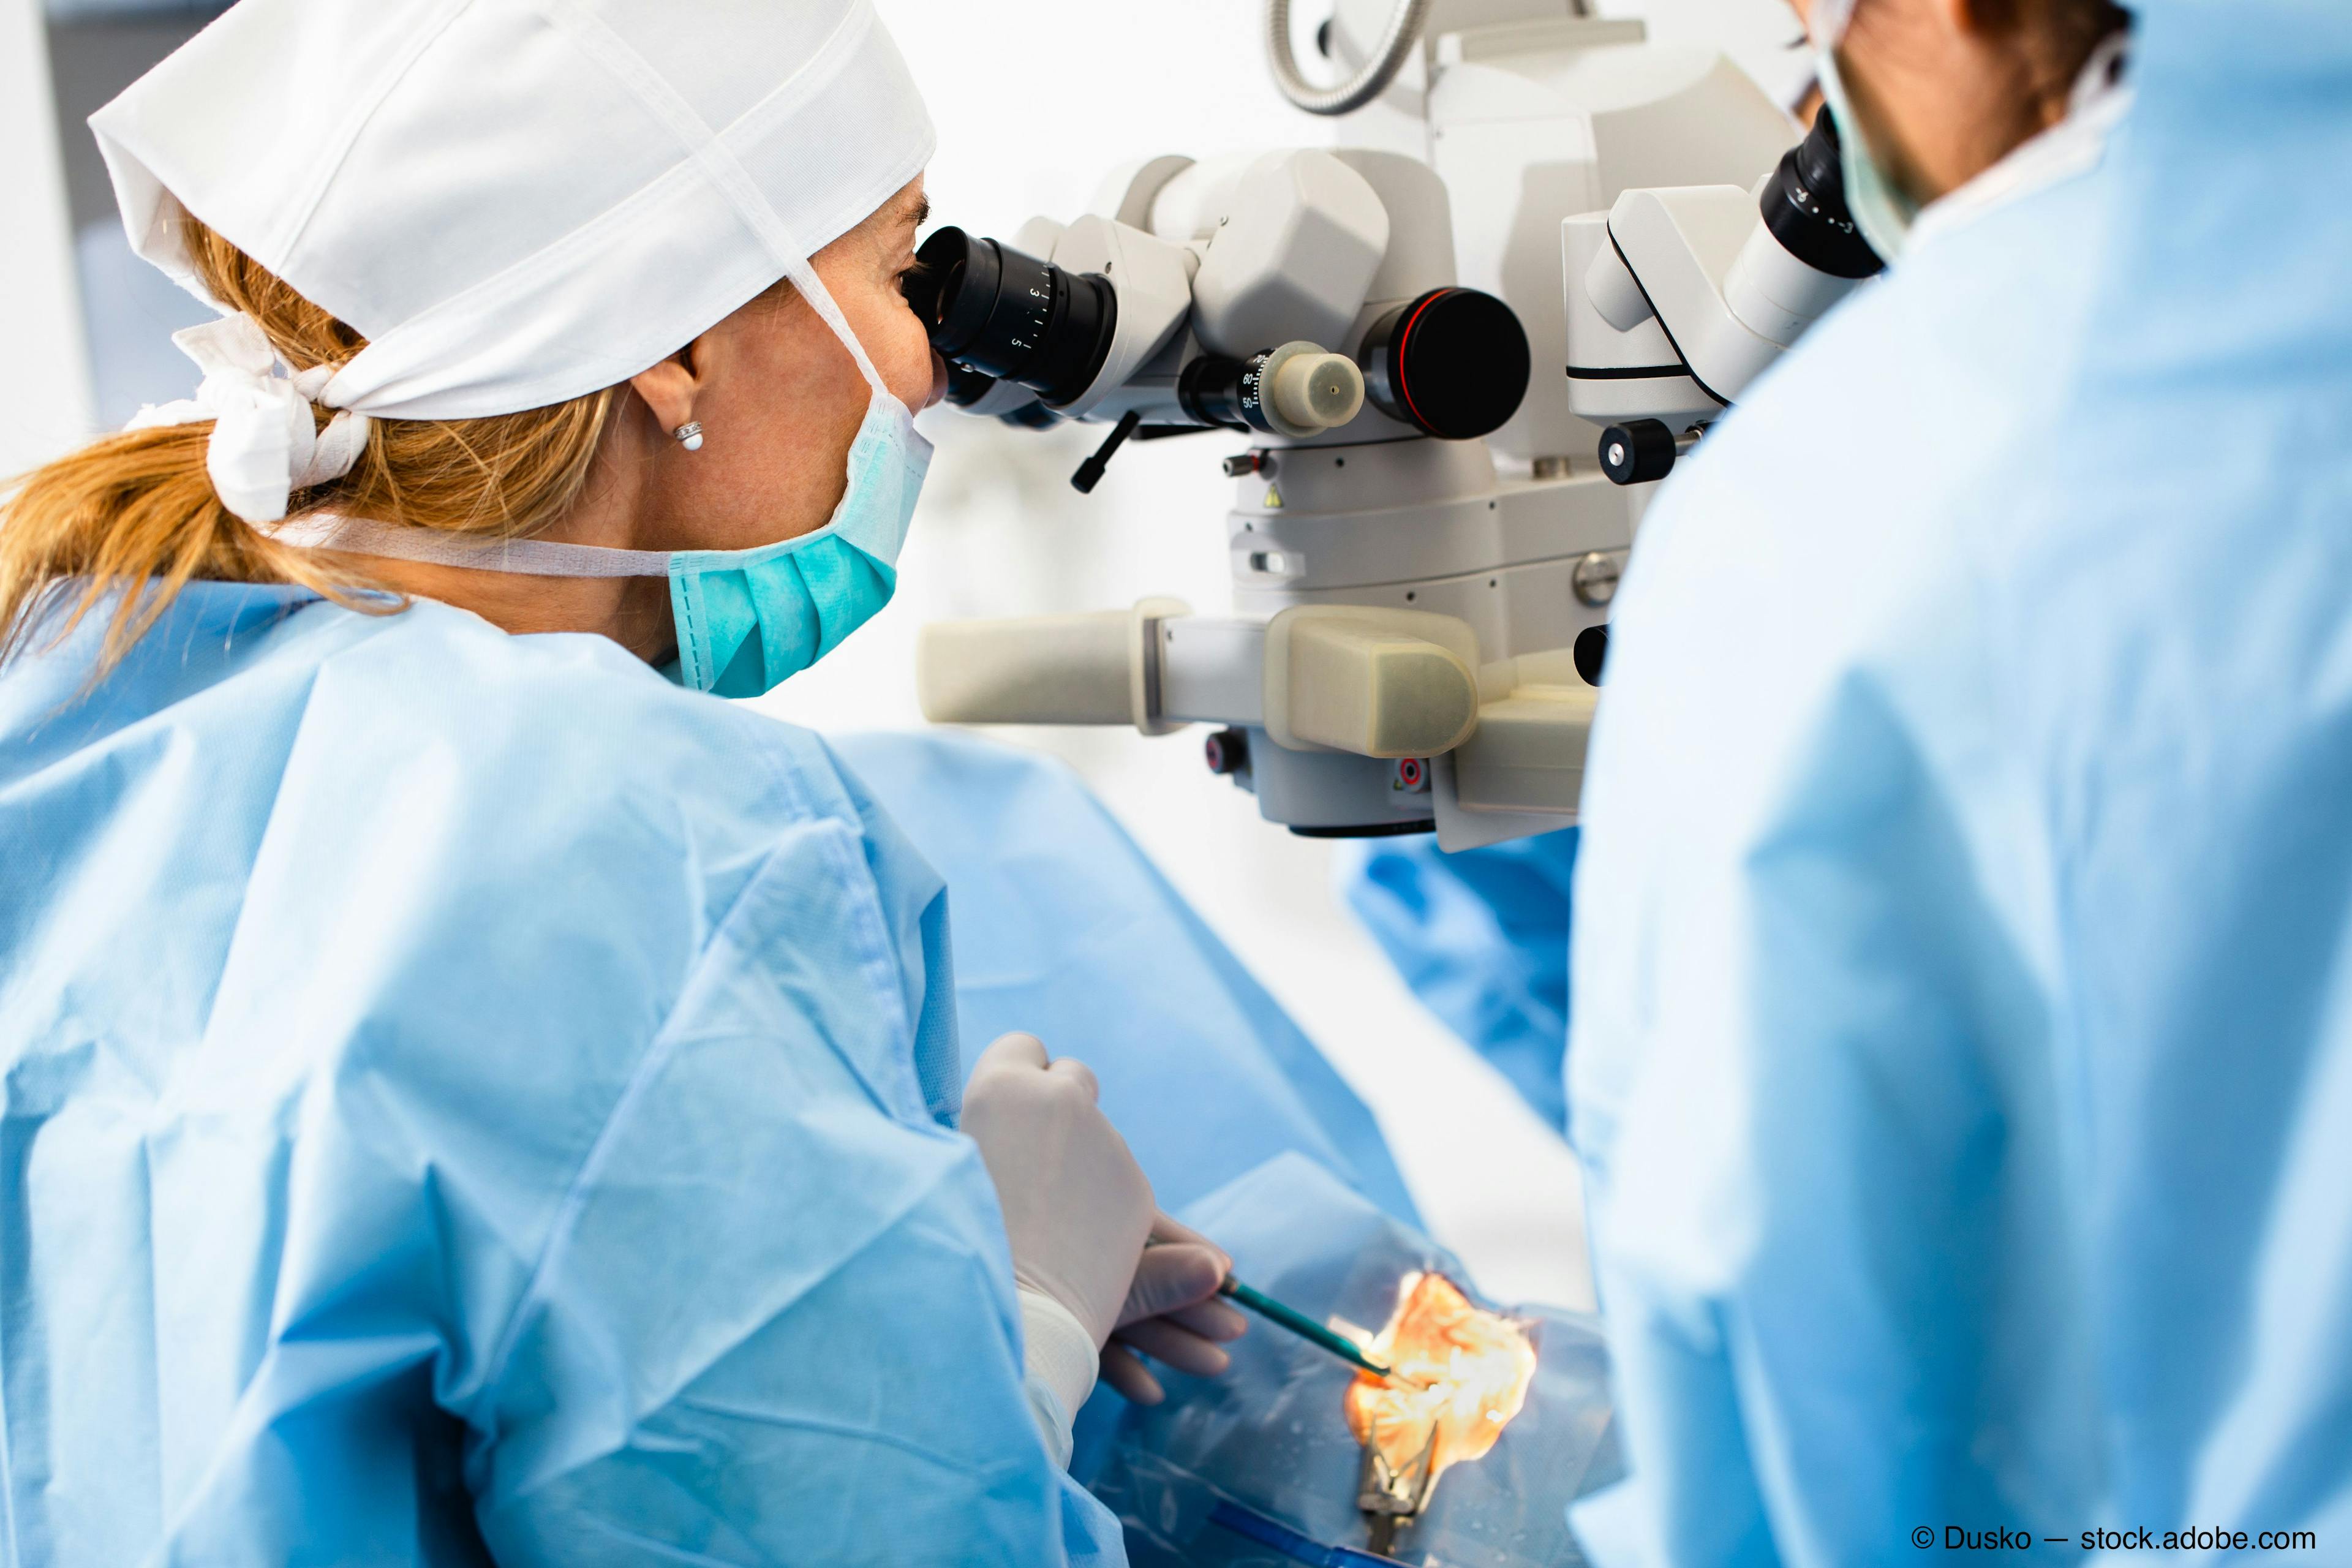 Netarsudil provides IOP lowering in goniotomy treated eyes 